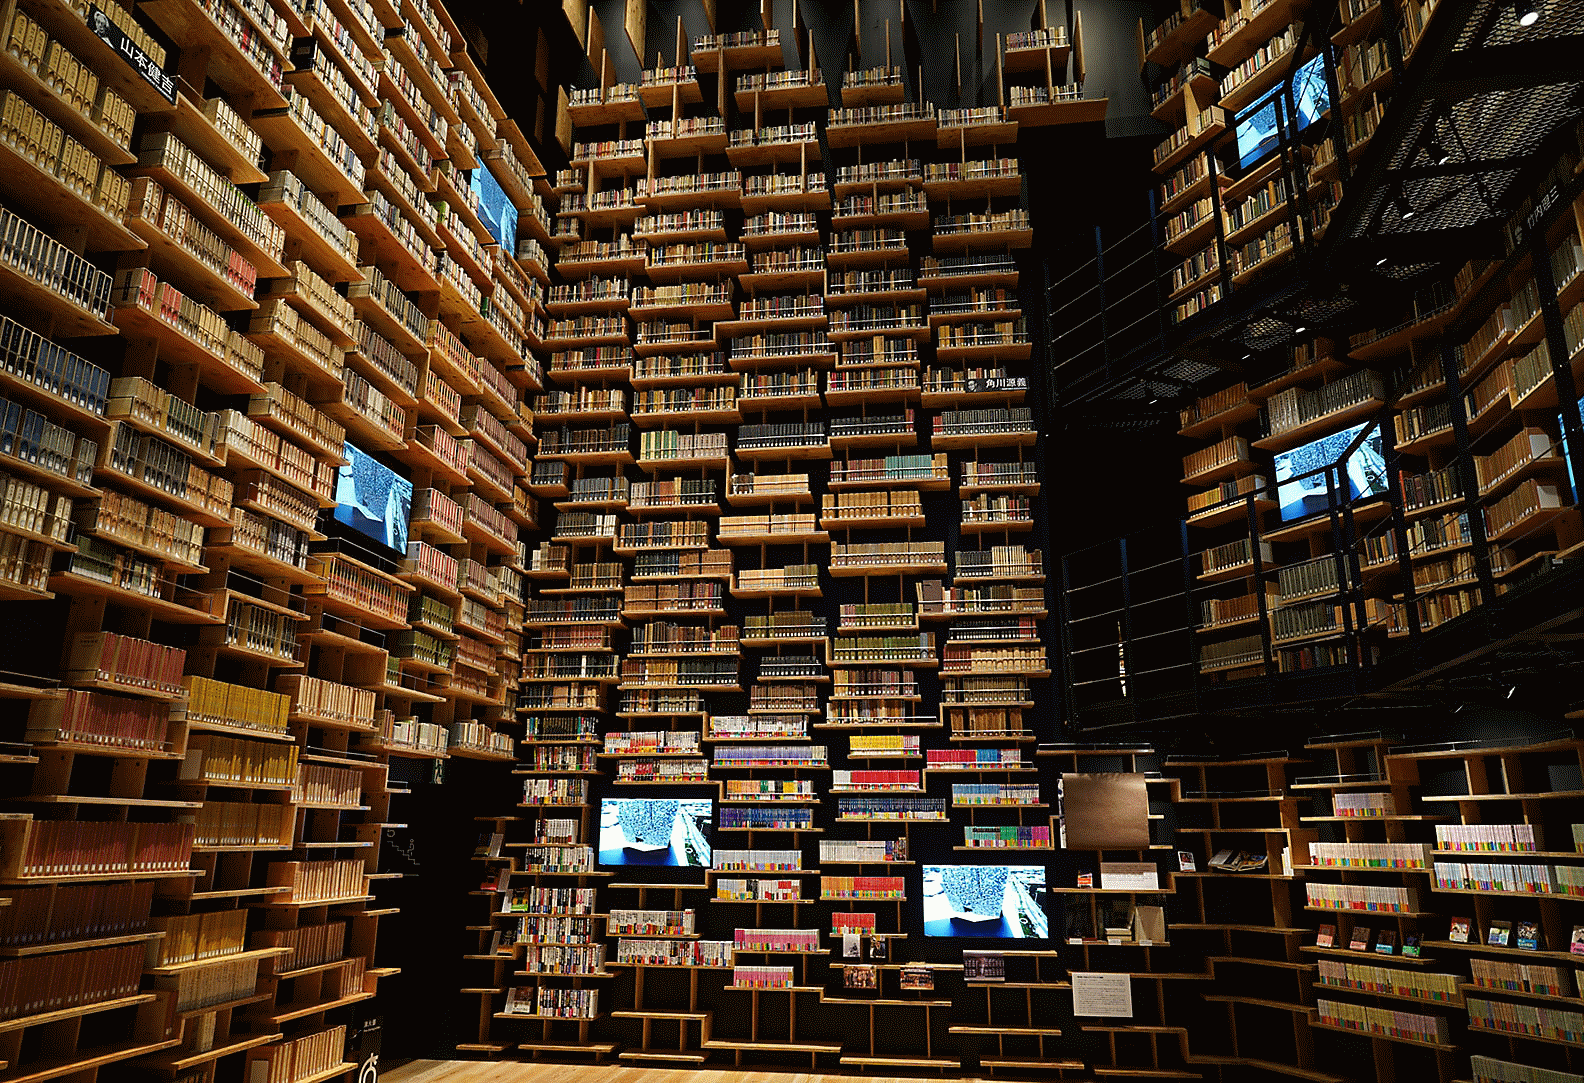 Intérieur d'une bibliothèque capturé à l'aide de l'objectif, avec une haute résolution dans tous les coins de l'image